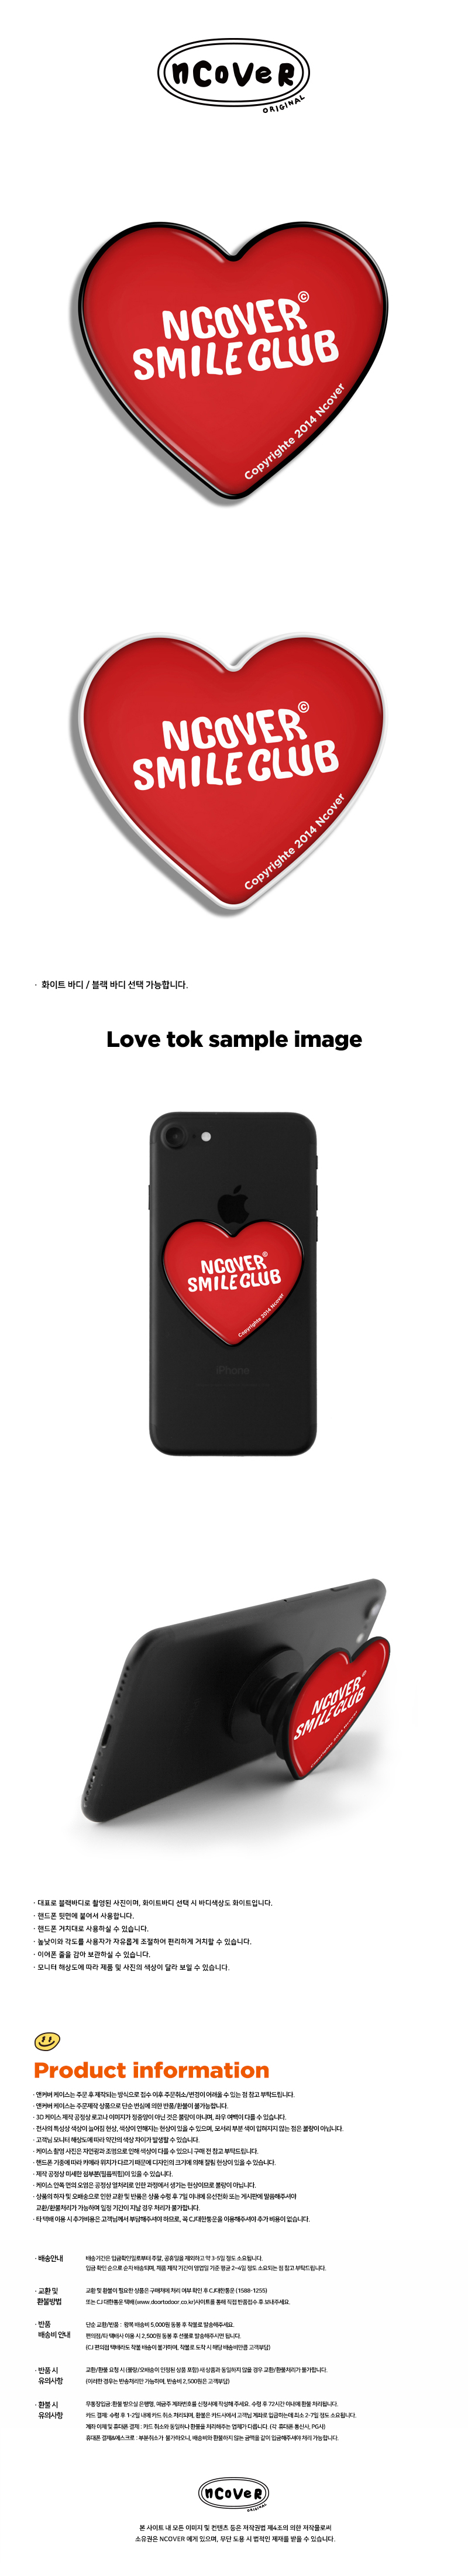  Smile club-red(heart tok)  10,000원 - 바이인터내셔널주식회사 디지털, 모바일 액세서리, 거치대/홀더, 스마트톡/스마트링 바보사랑  Smile club-red(heart tok)  10,000원 - 바이인터내셔널주식회사 디지털, 모바일 액세서리, 거치대/홀더, 스마트톡/스마트링 바보사랑